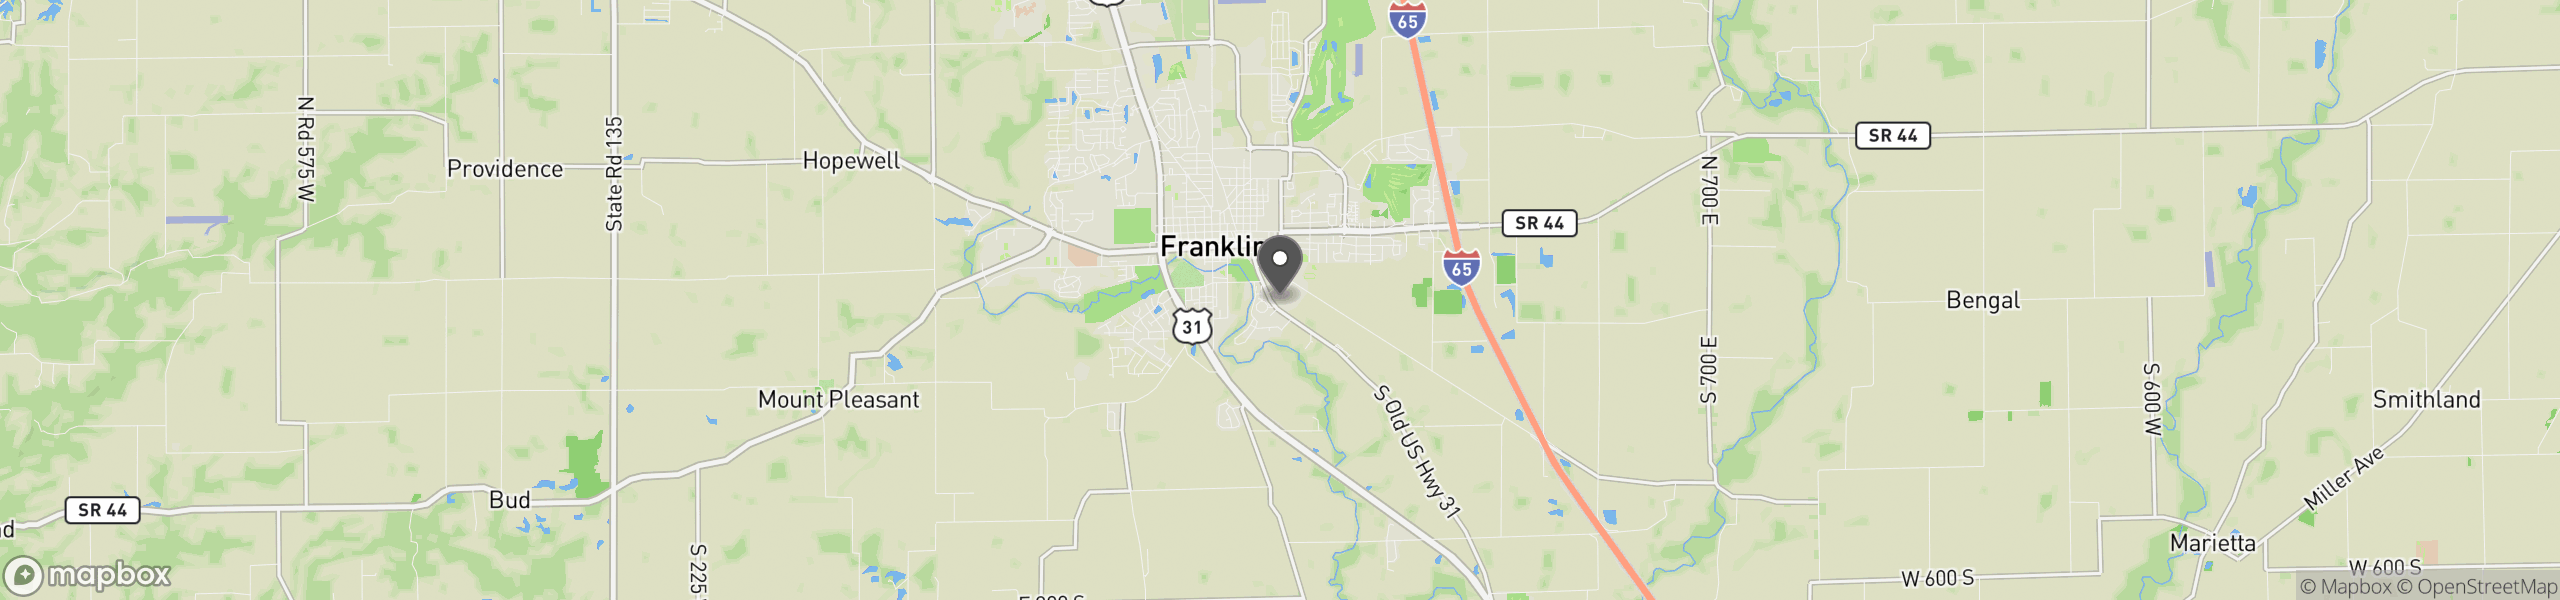 Franklin, IN 46131